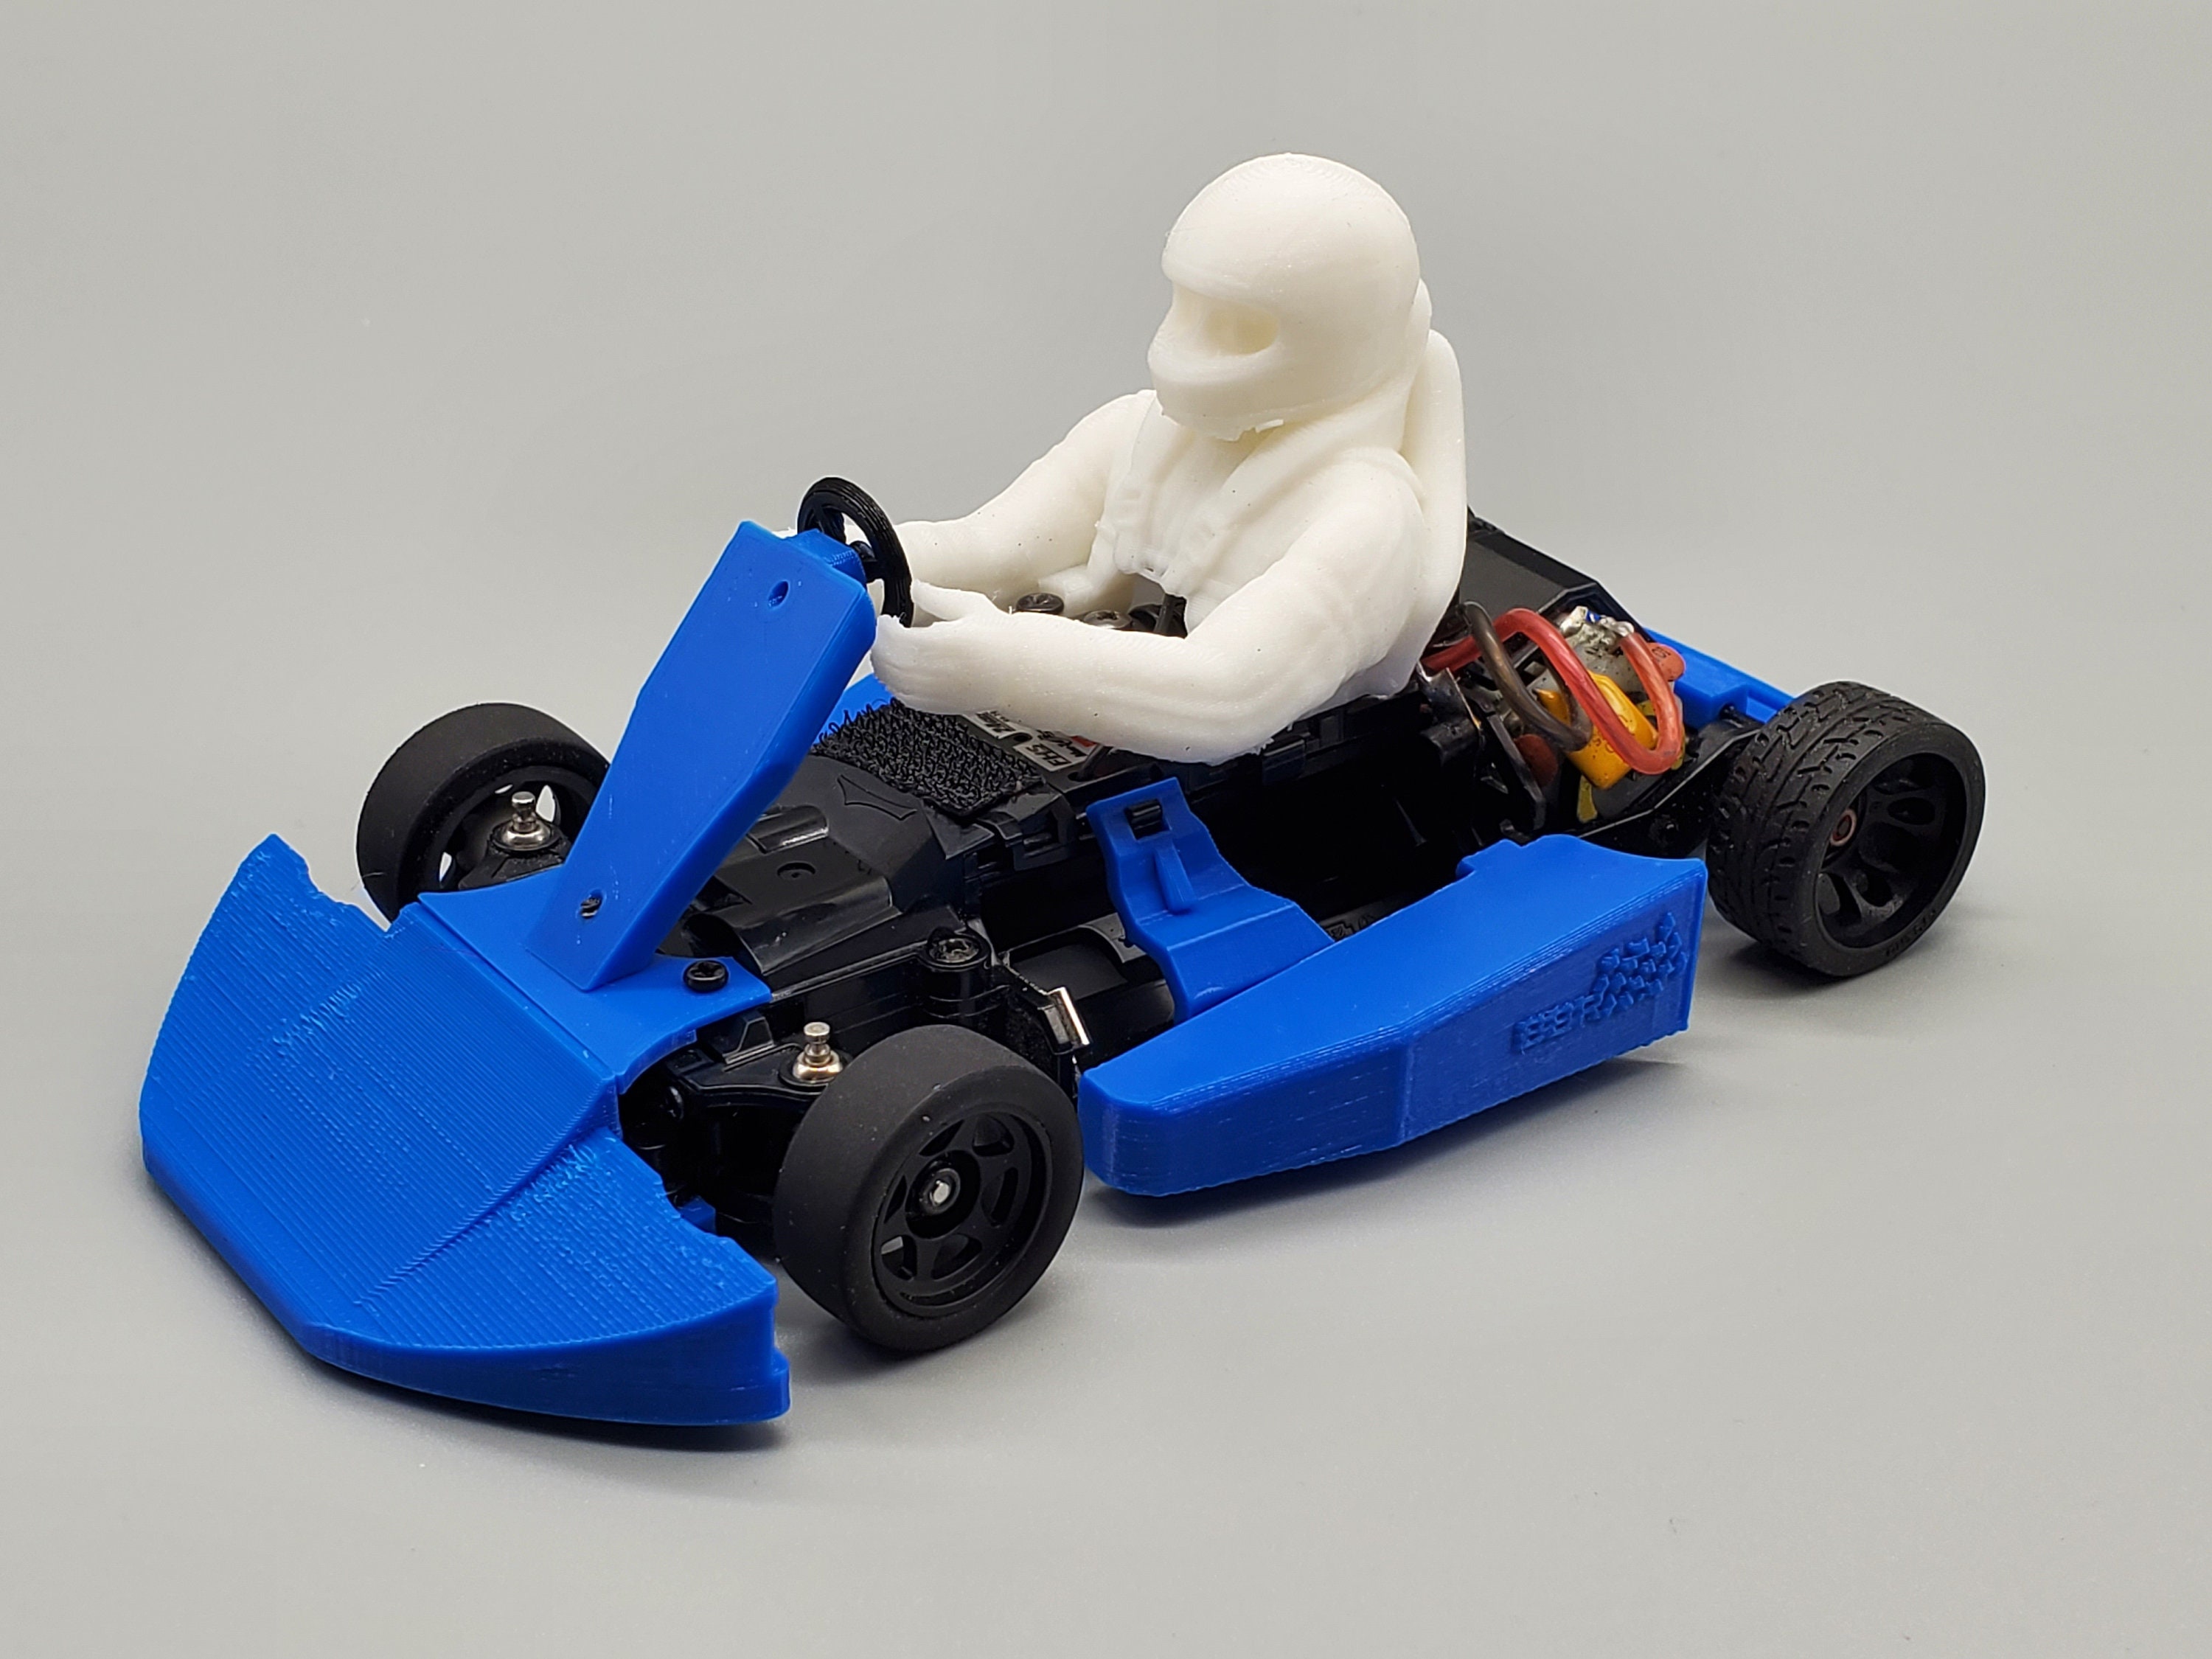 Principaux engrenage support Racing Kart 1:5 Kyosho kt-009 # 703431 